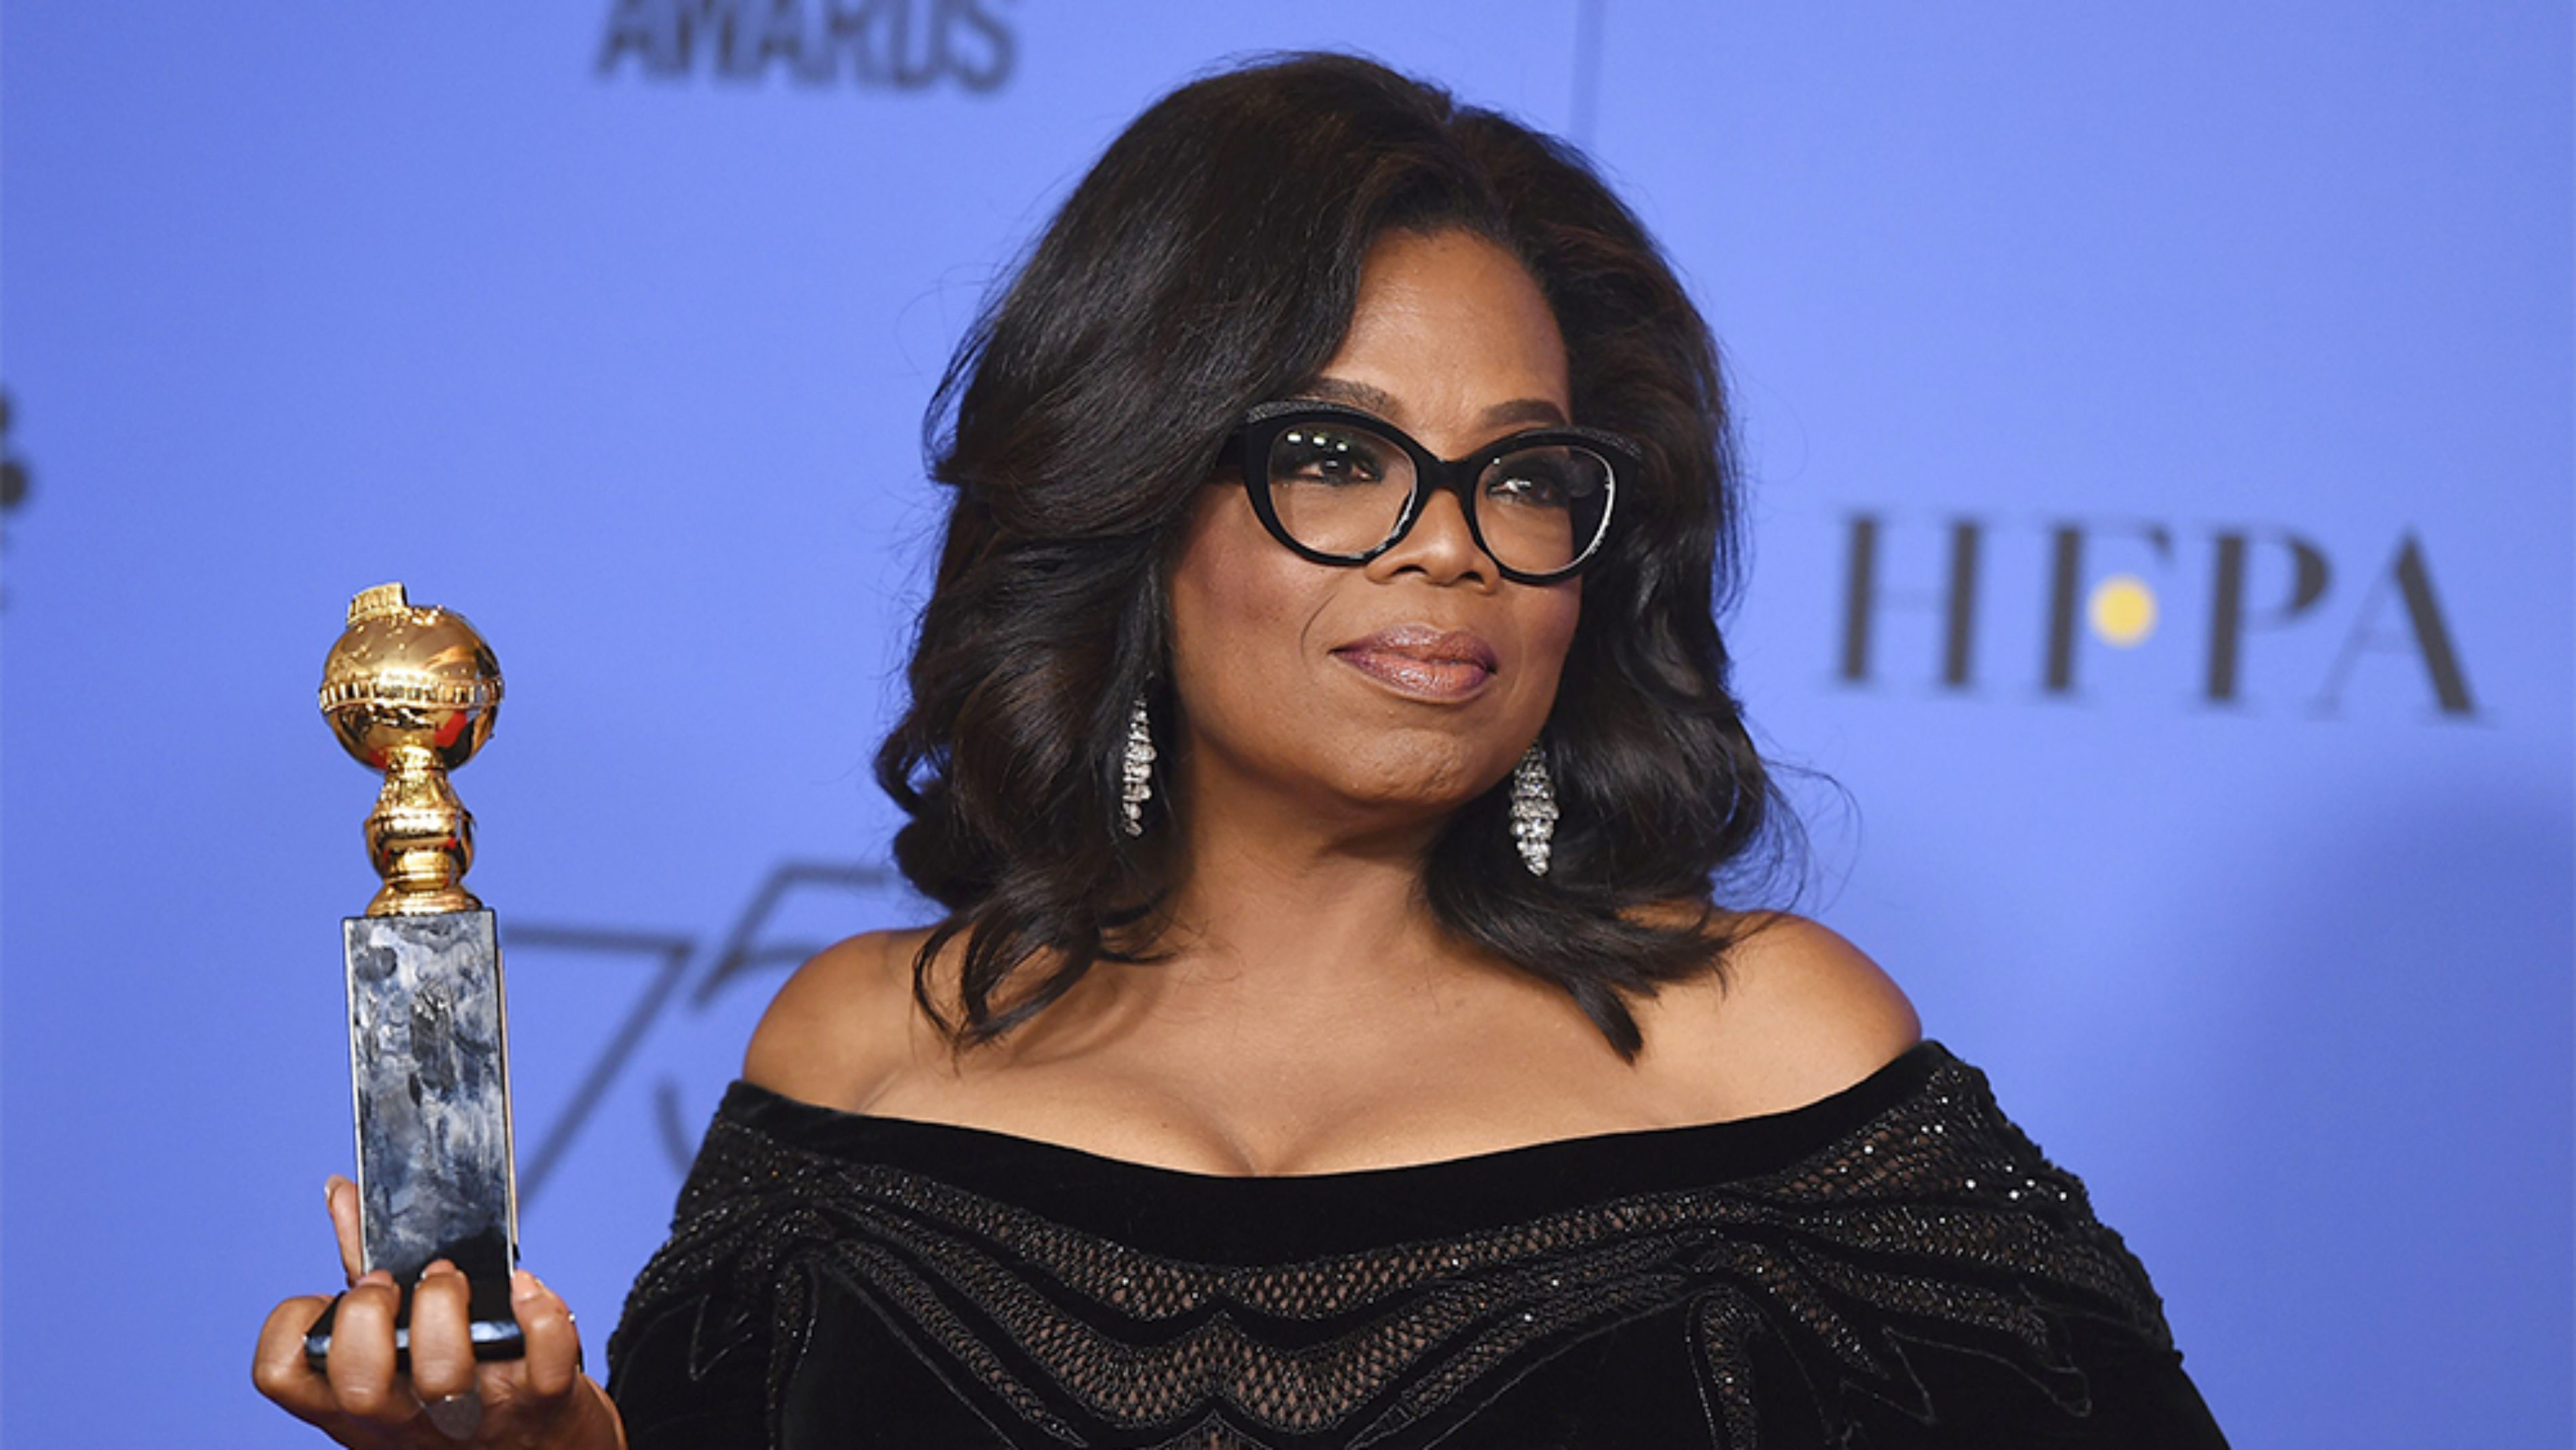 What Hardships Did Oprah Winfrey Face